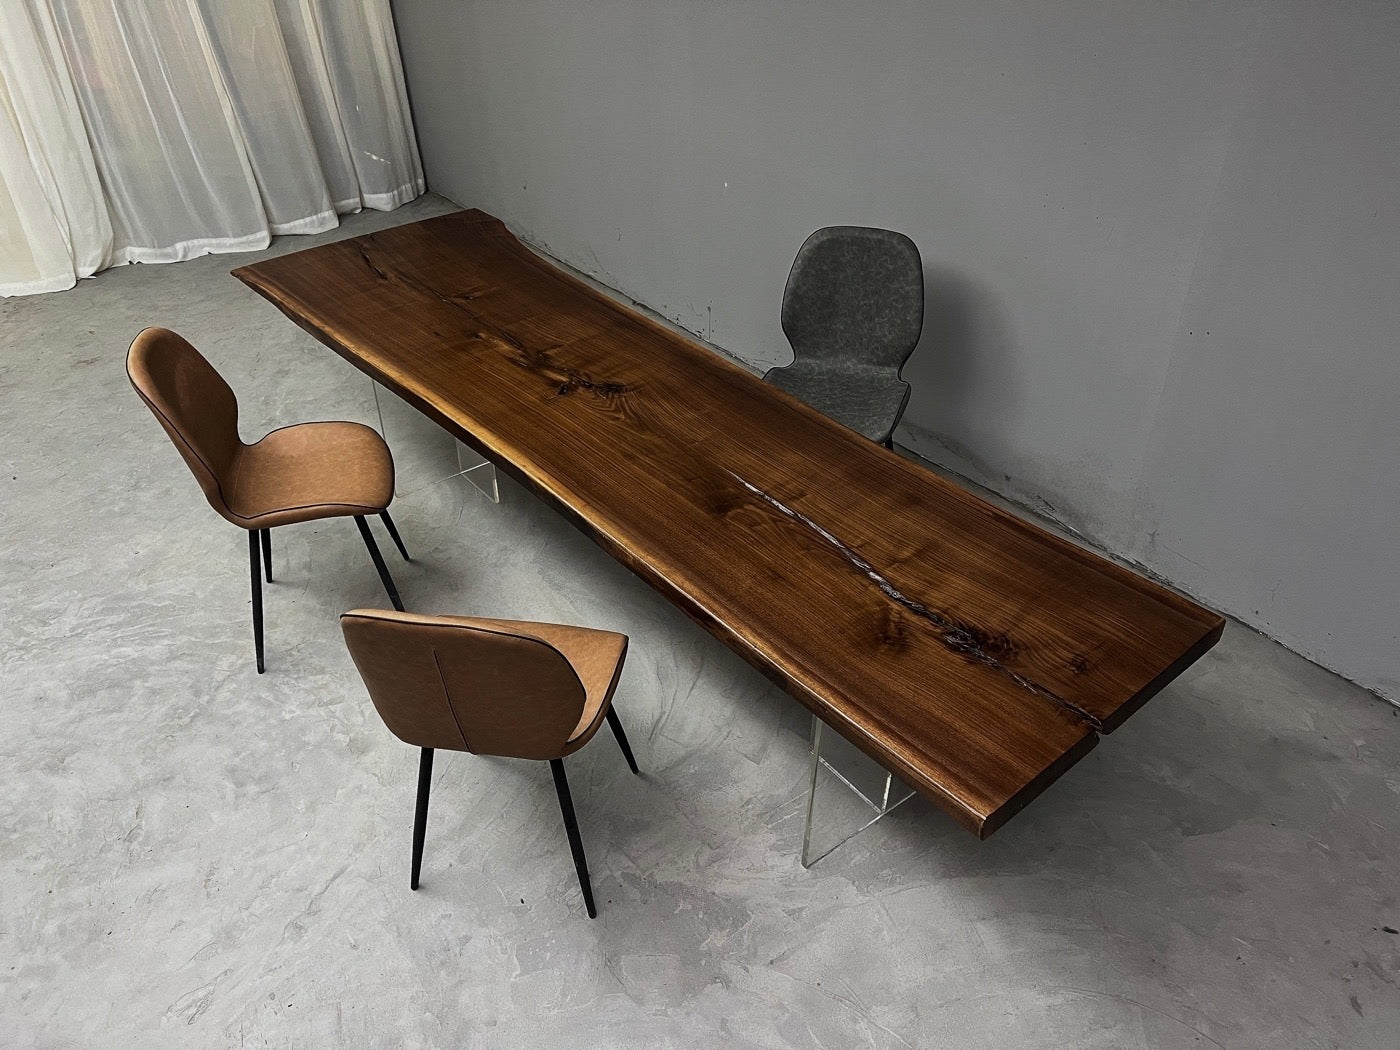 لوح الجوز الأمريكي الأسود، لوح الخشب لسطح الطاولة، طاولة لوح الجوز